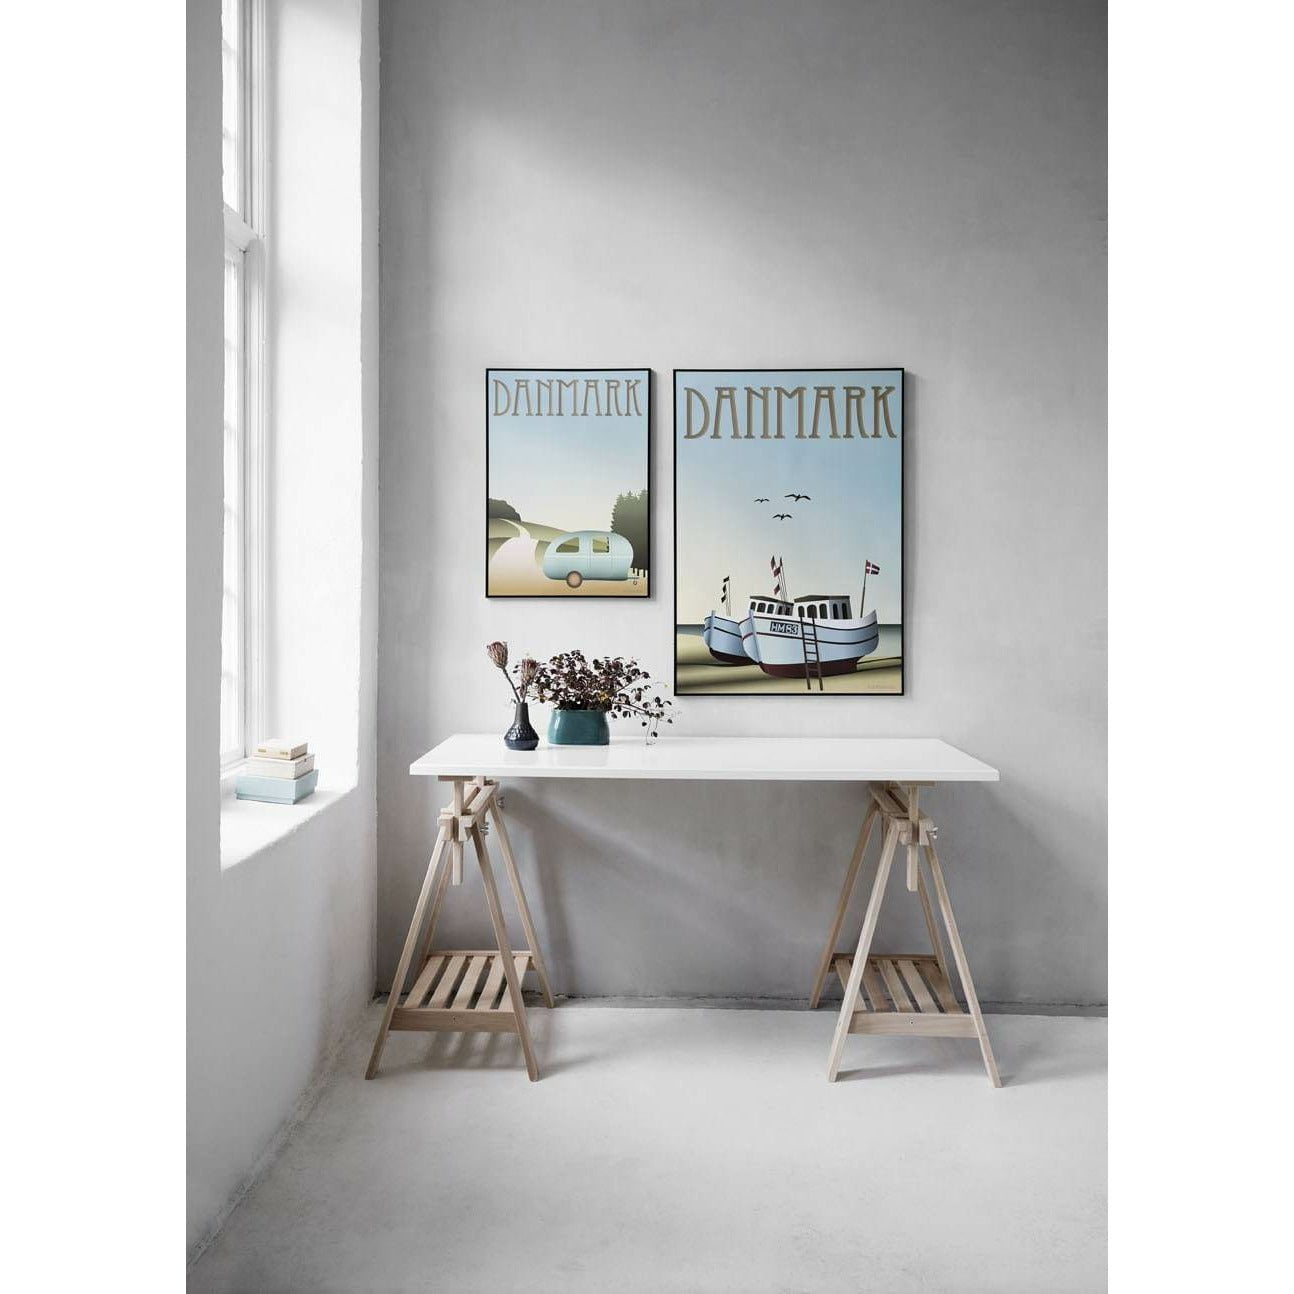 Vissevasse Affiche de bateaux de pêche au Danemark, 70 x100 cm